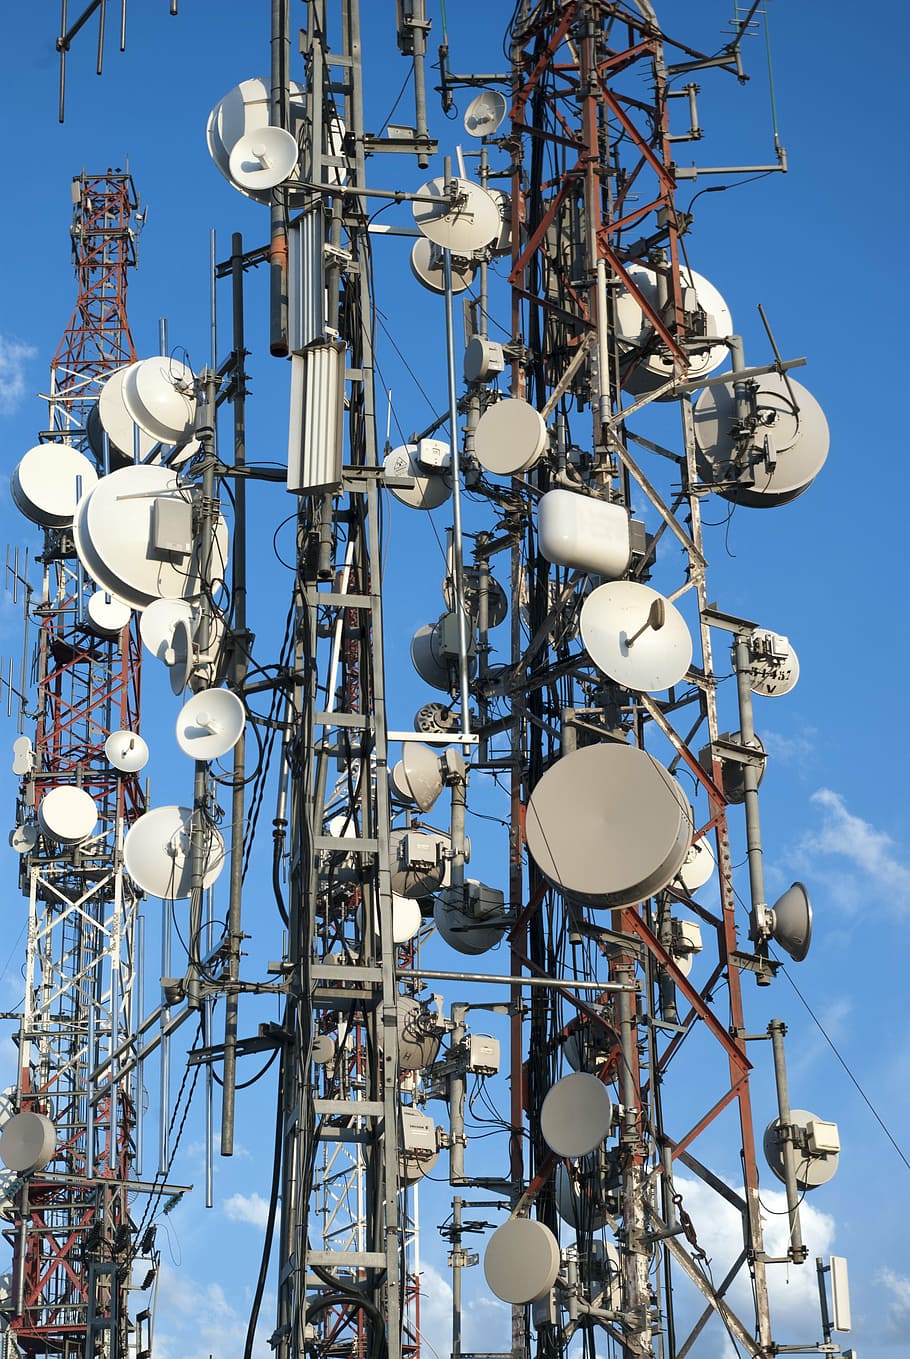 torre de satélite, telecomunicaciones, antenas, teléfono móvil, móvil, canal, teléfono celular, señal, teléfono, estación de radiodifusión